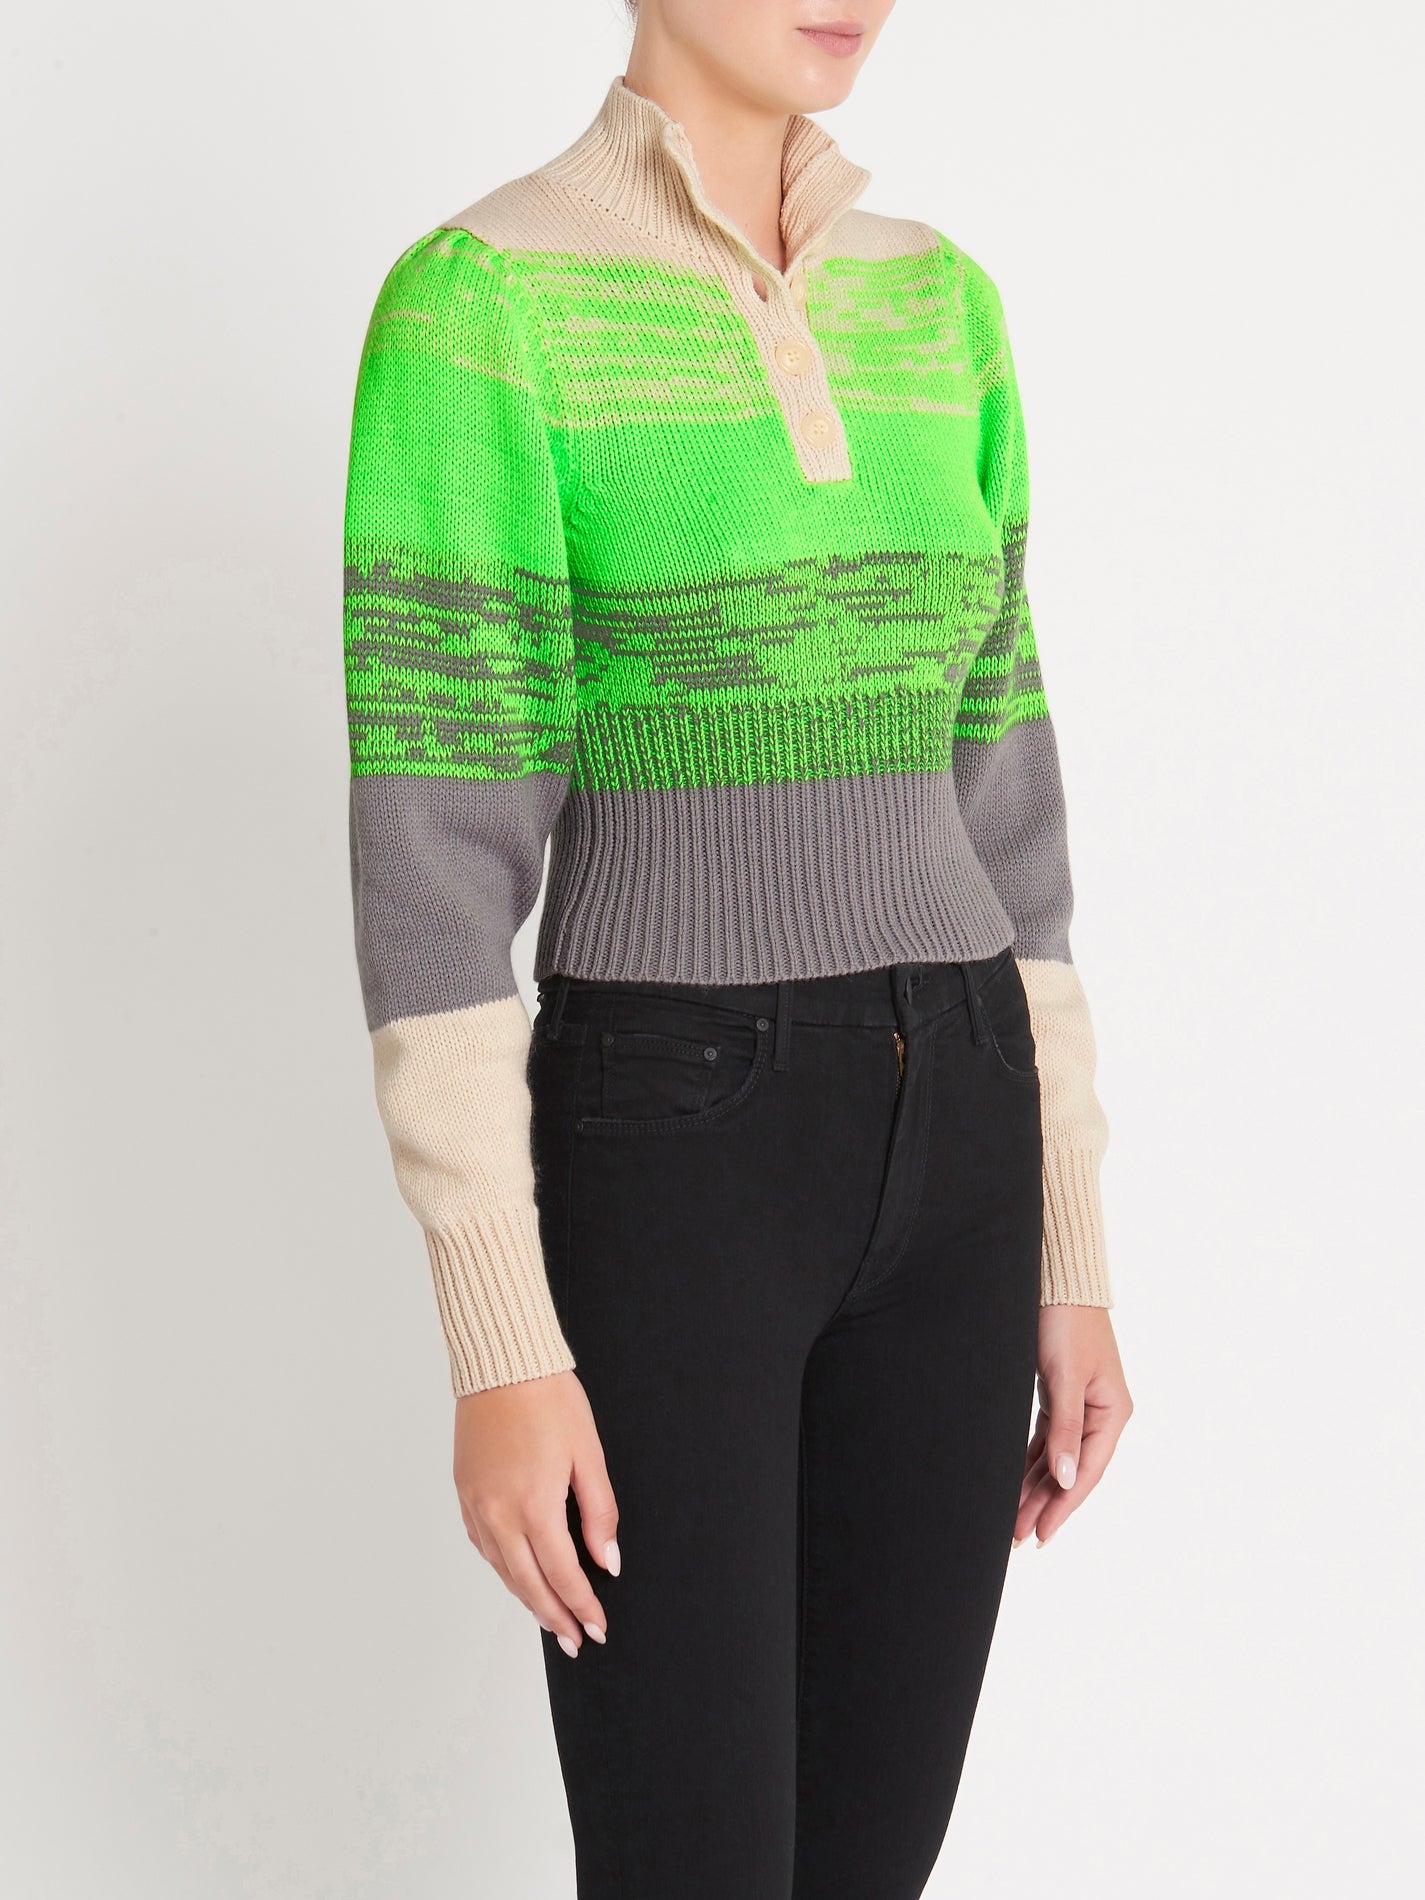 Stirre Postkort fusionere Baum Und Pferdgarten Caroleen Sweater in Whitecap Grey – Order Of Style